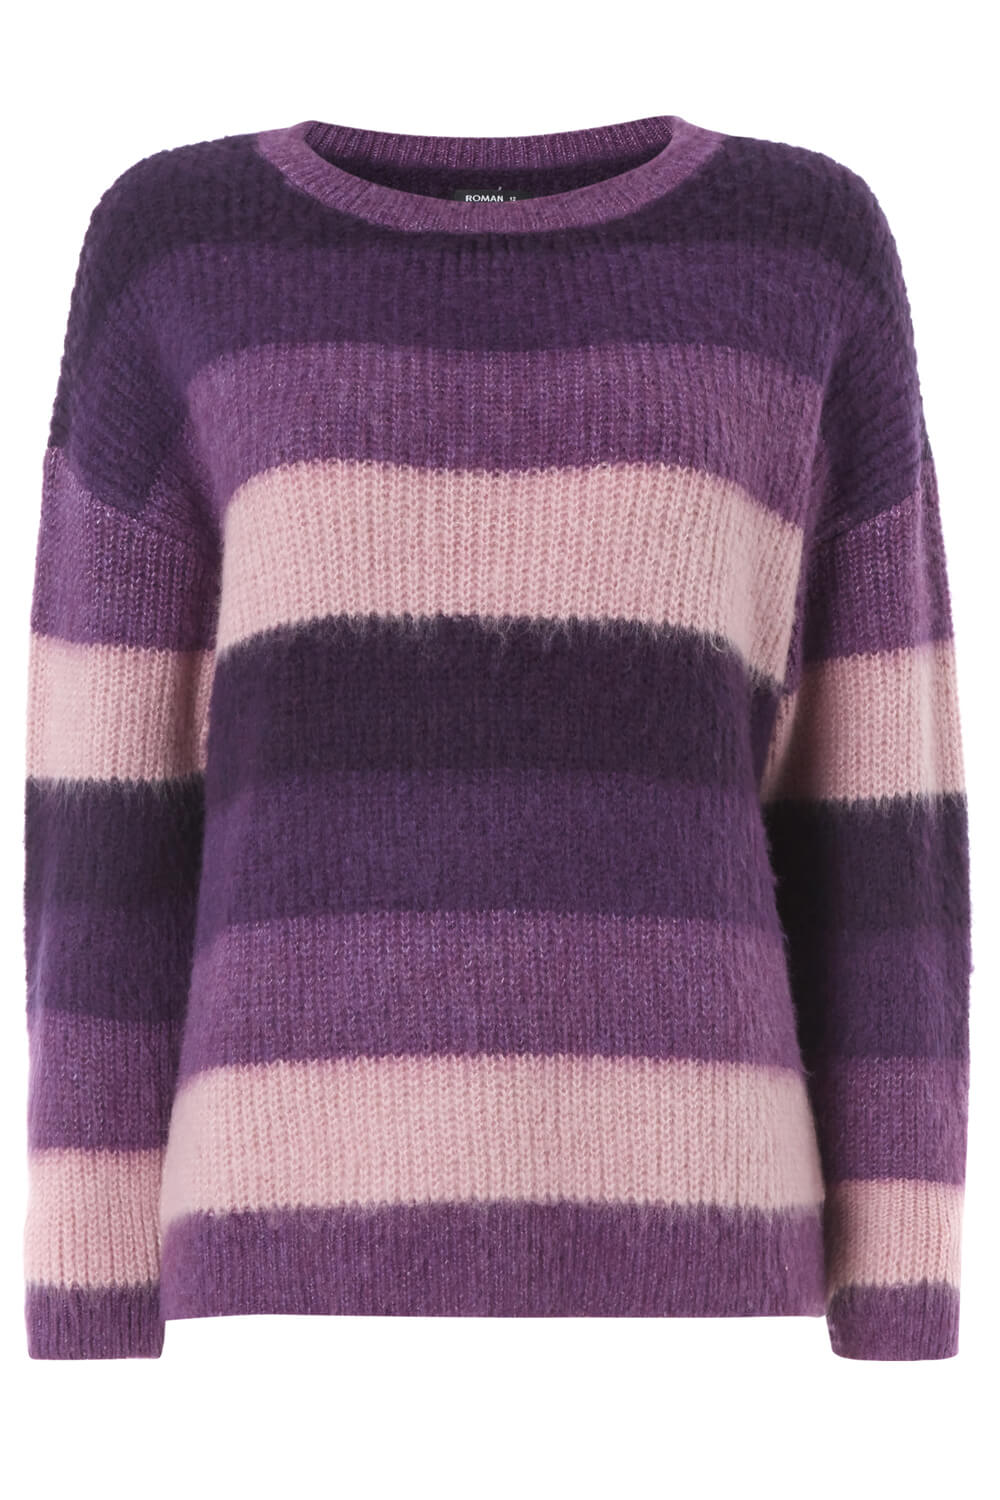 Purple Brushed Stripe Jumper, Image 5 of 5